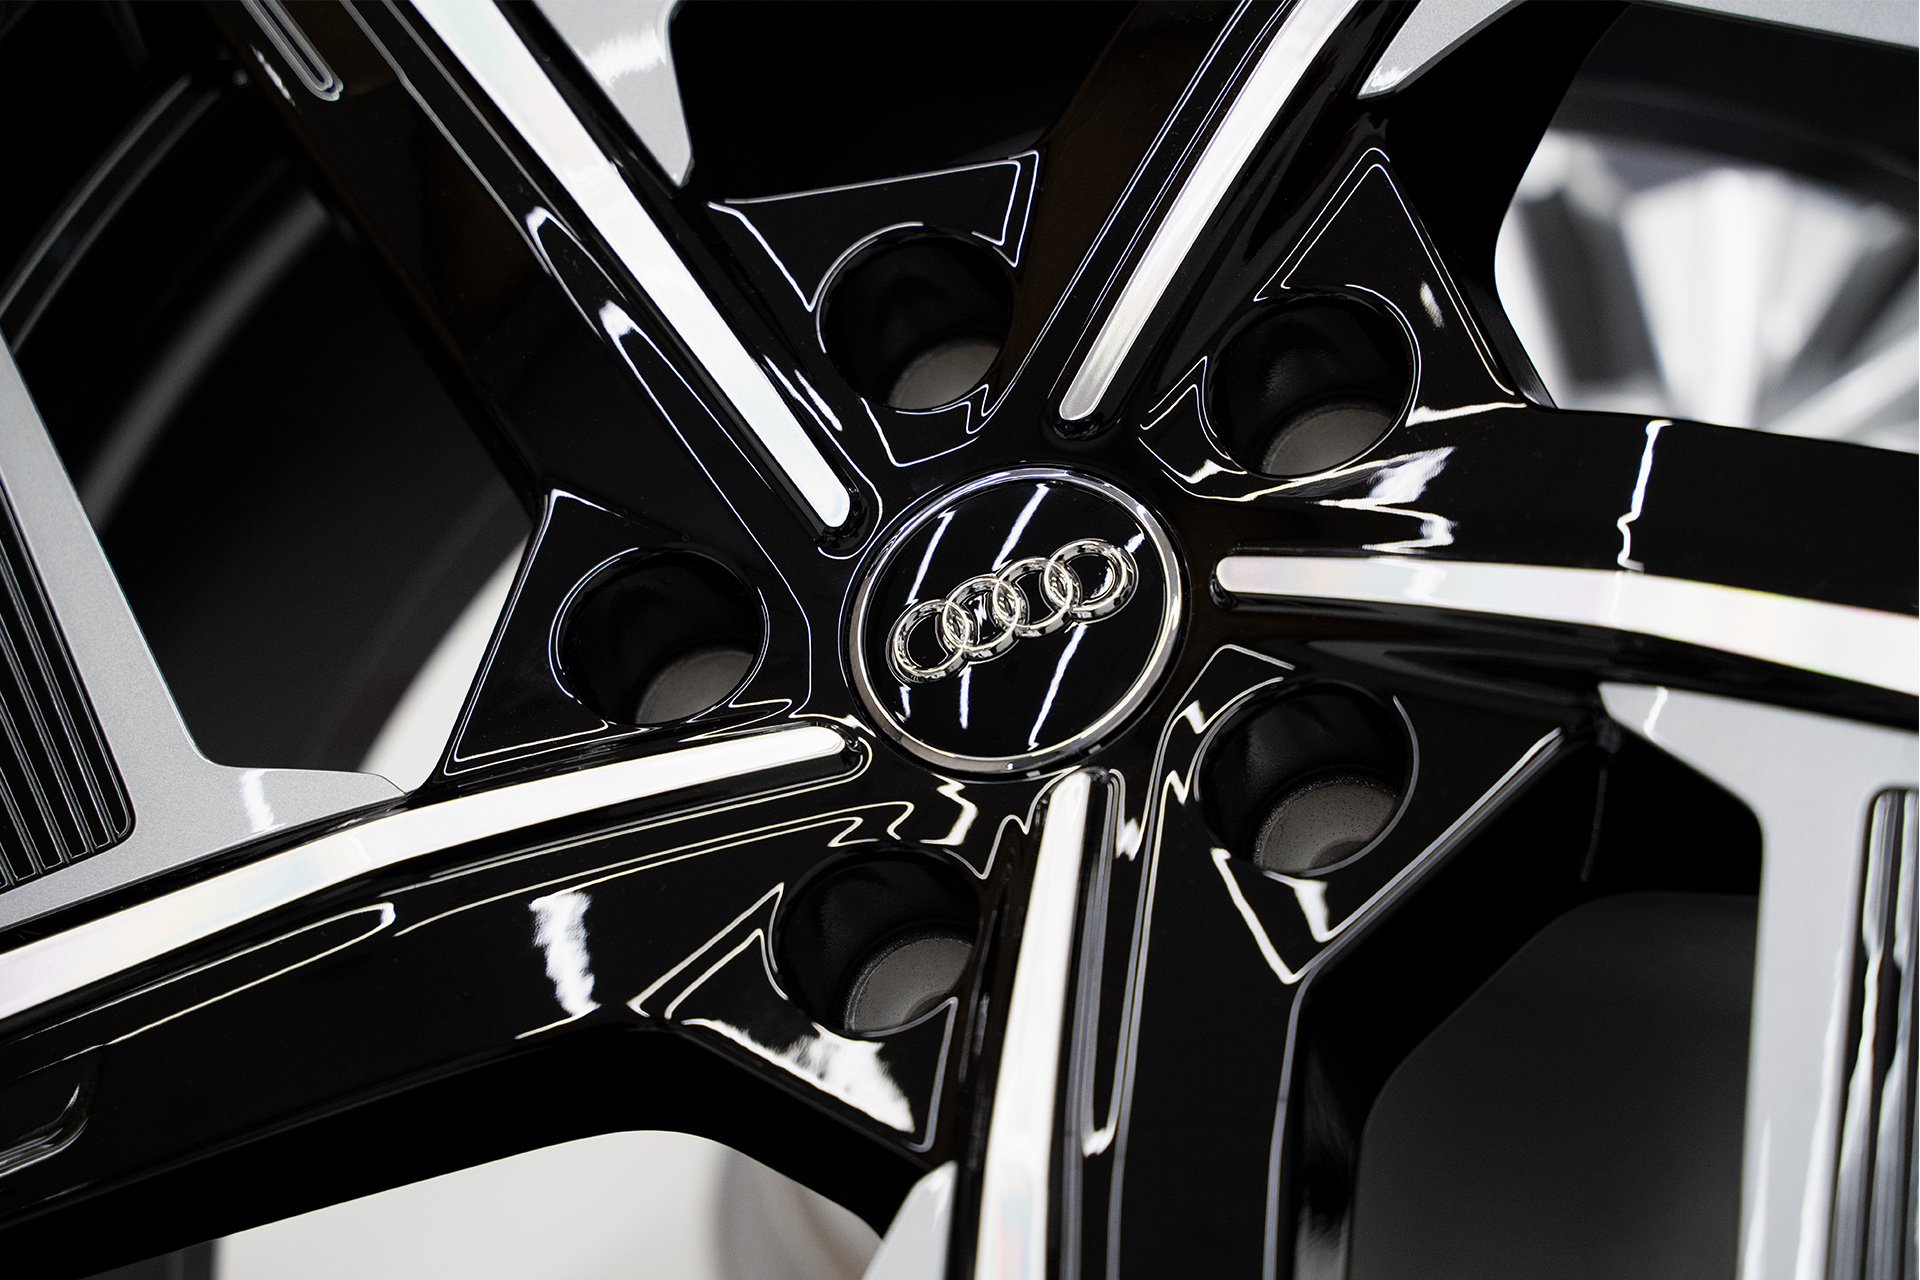 Immagine dettagliata dell’aerocerchio Audi.